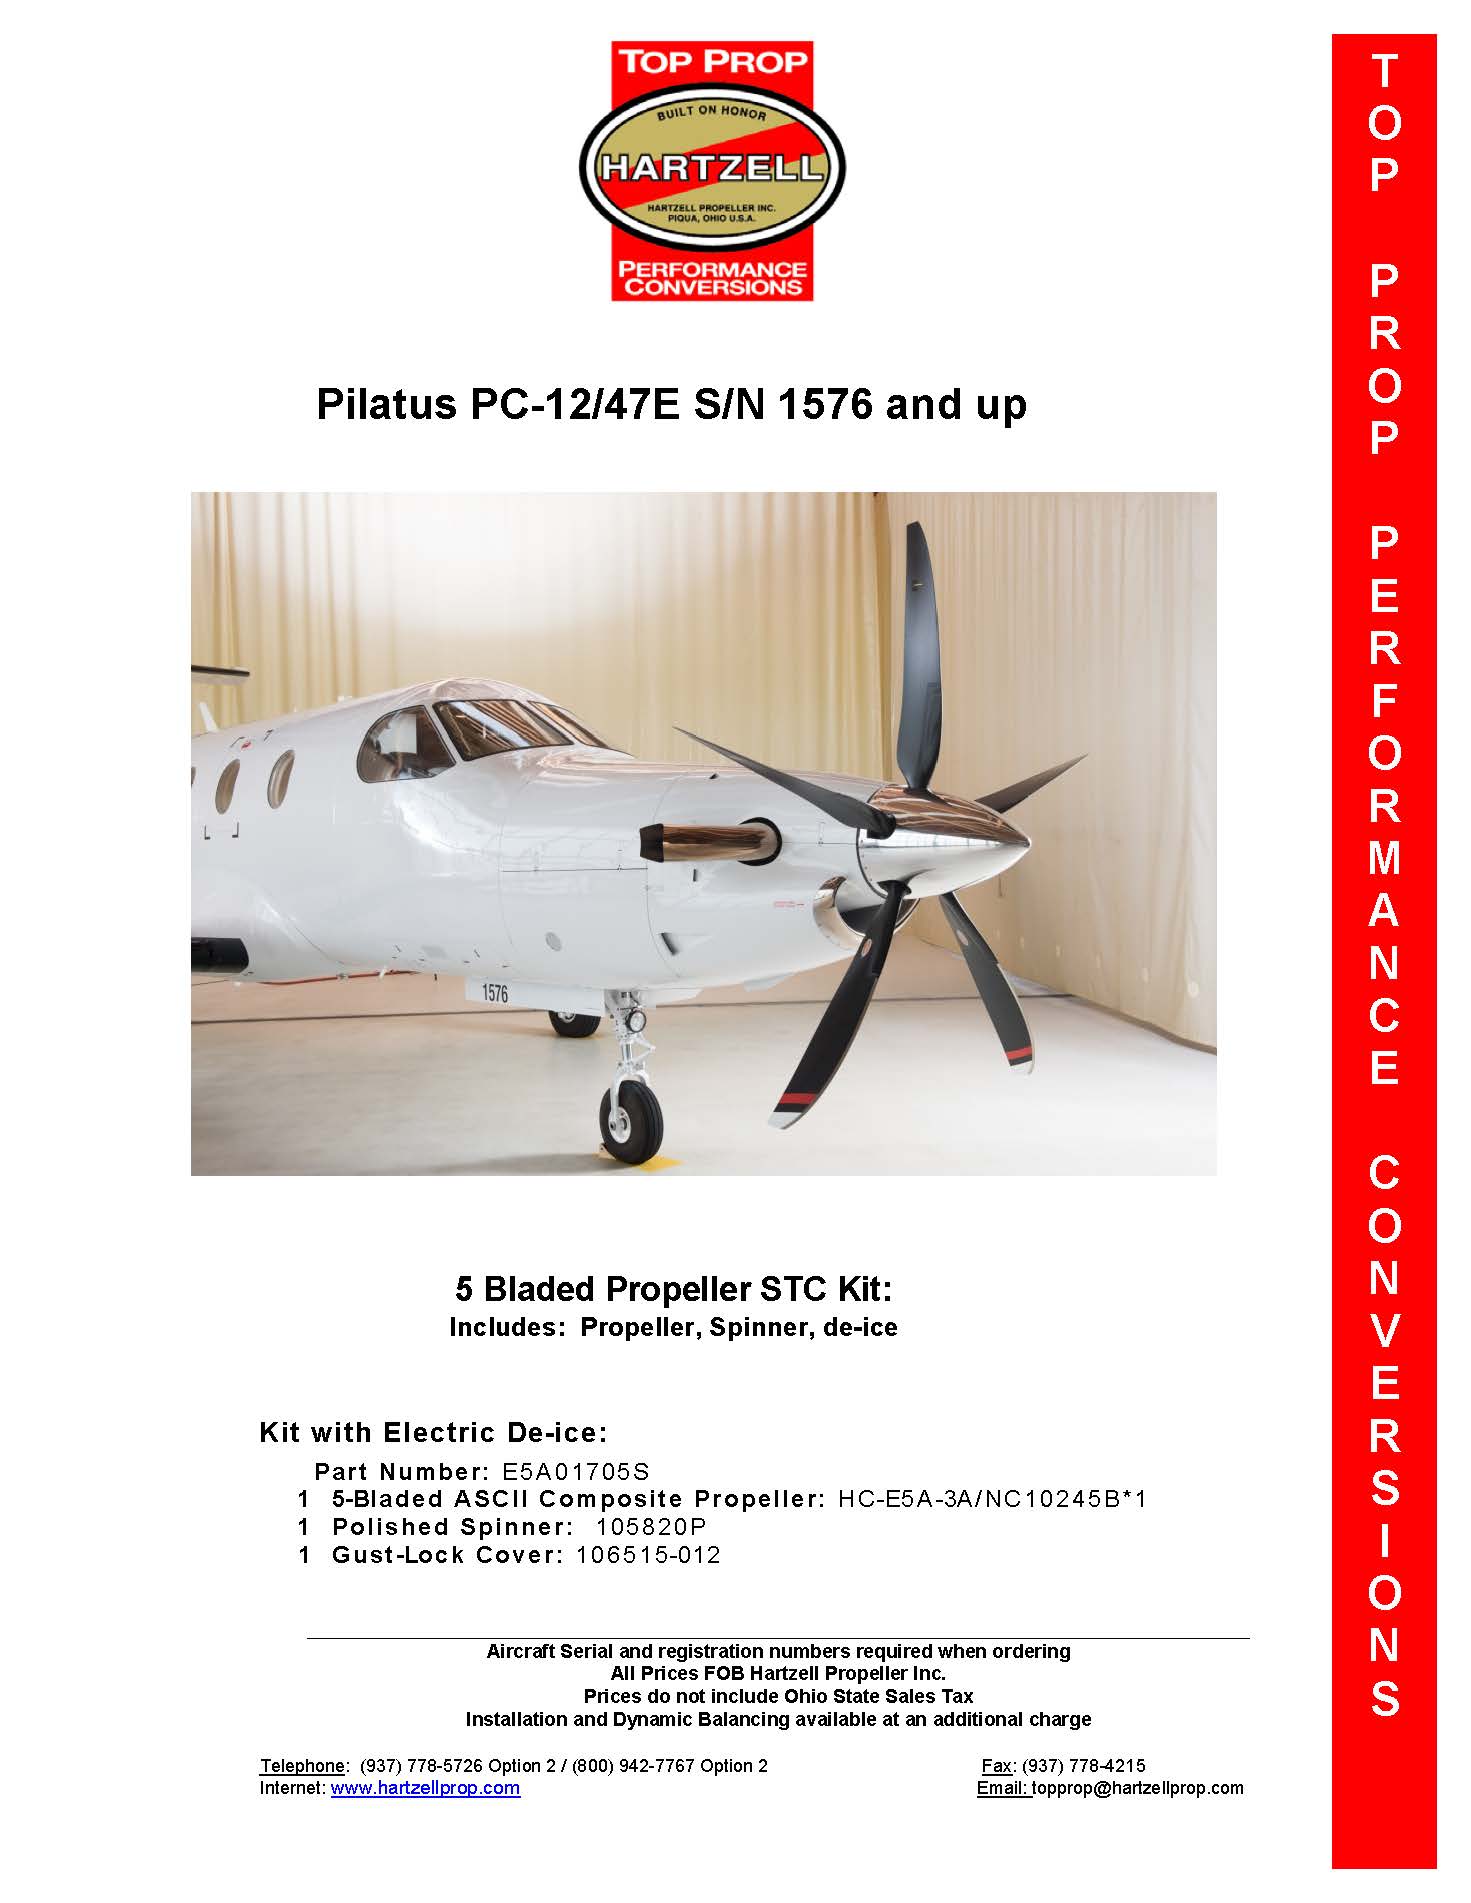 PILATUS-PC-12-SN1576-E5A01705S-PAGE-1